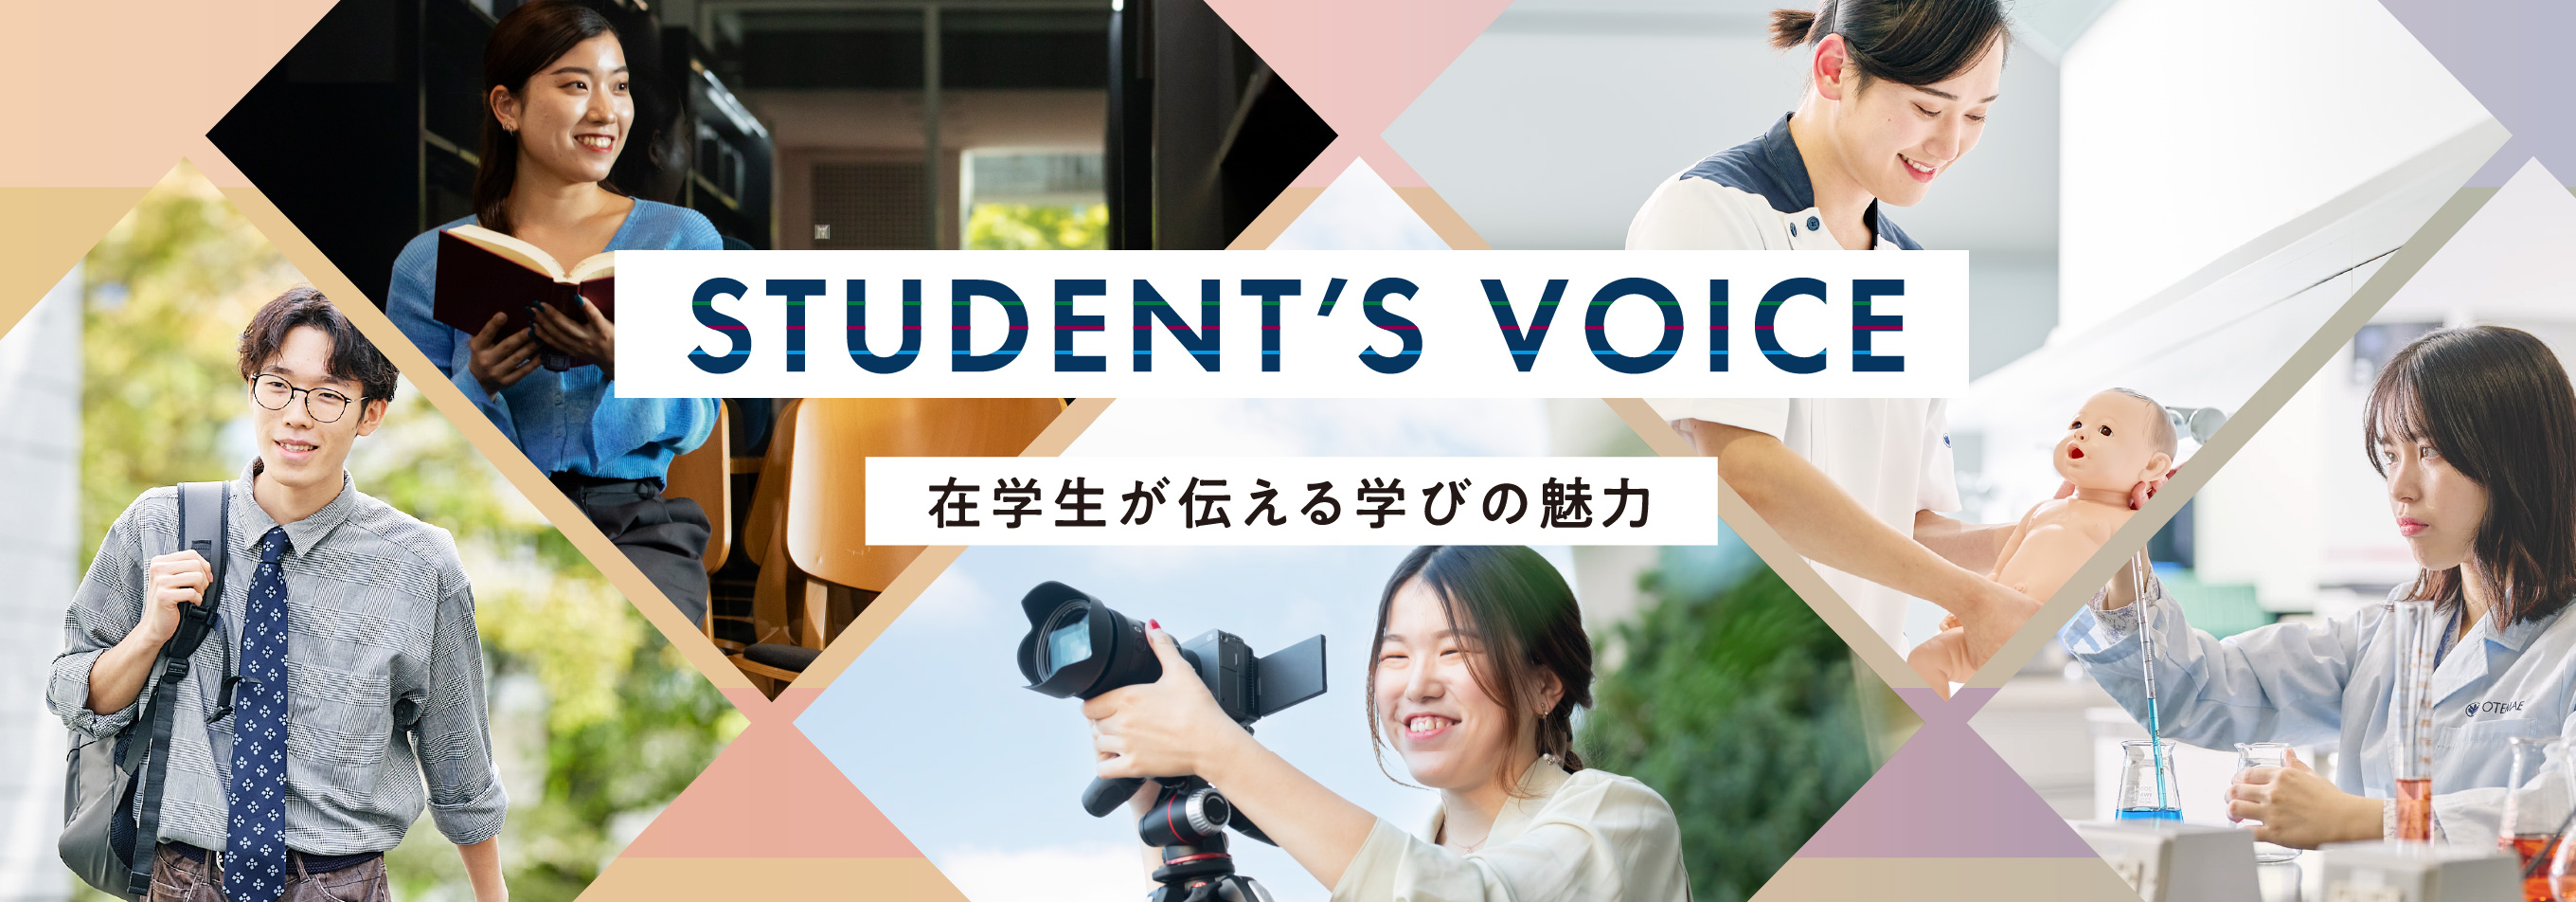 STUDENT’S VOICEイメージ